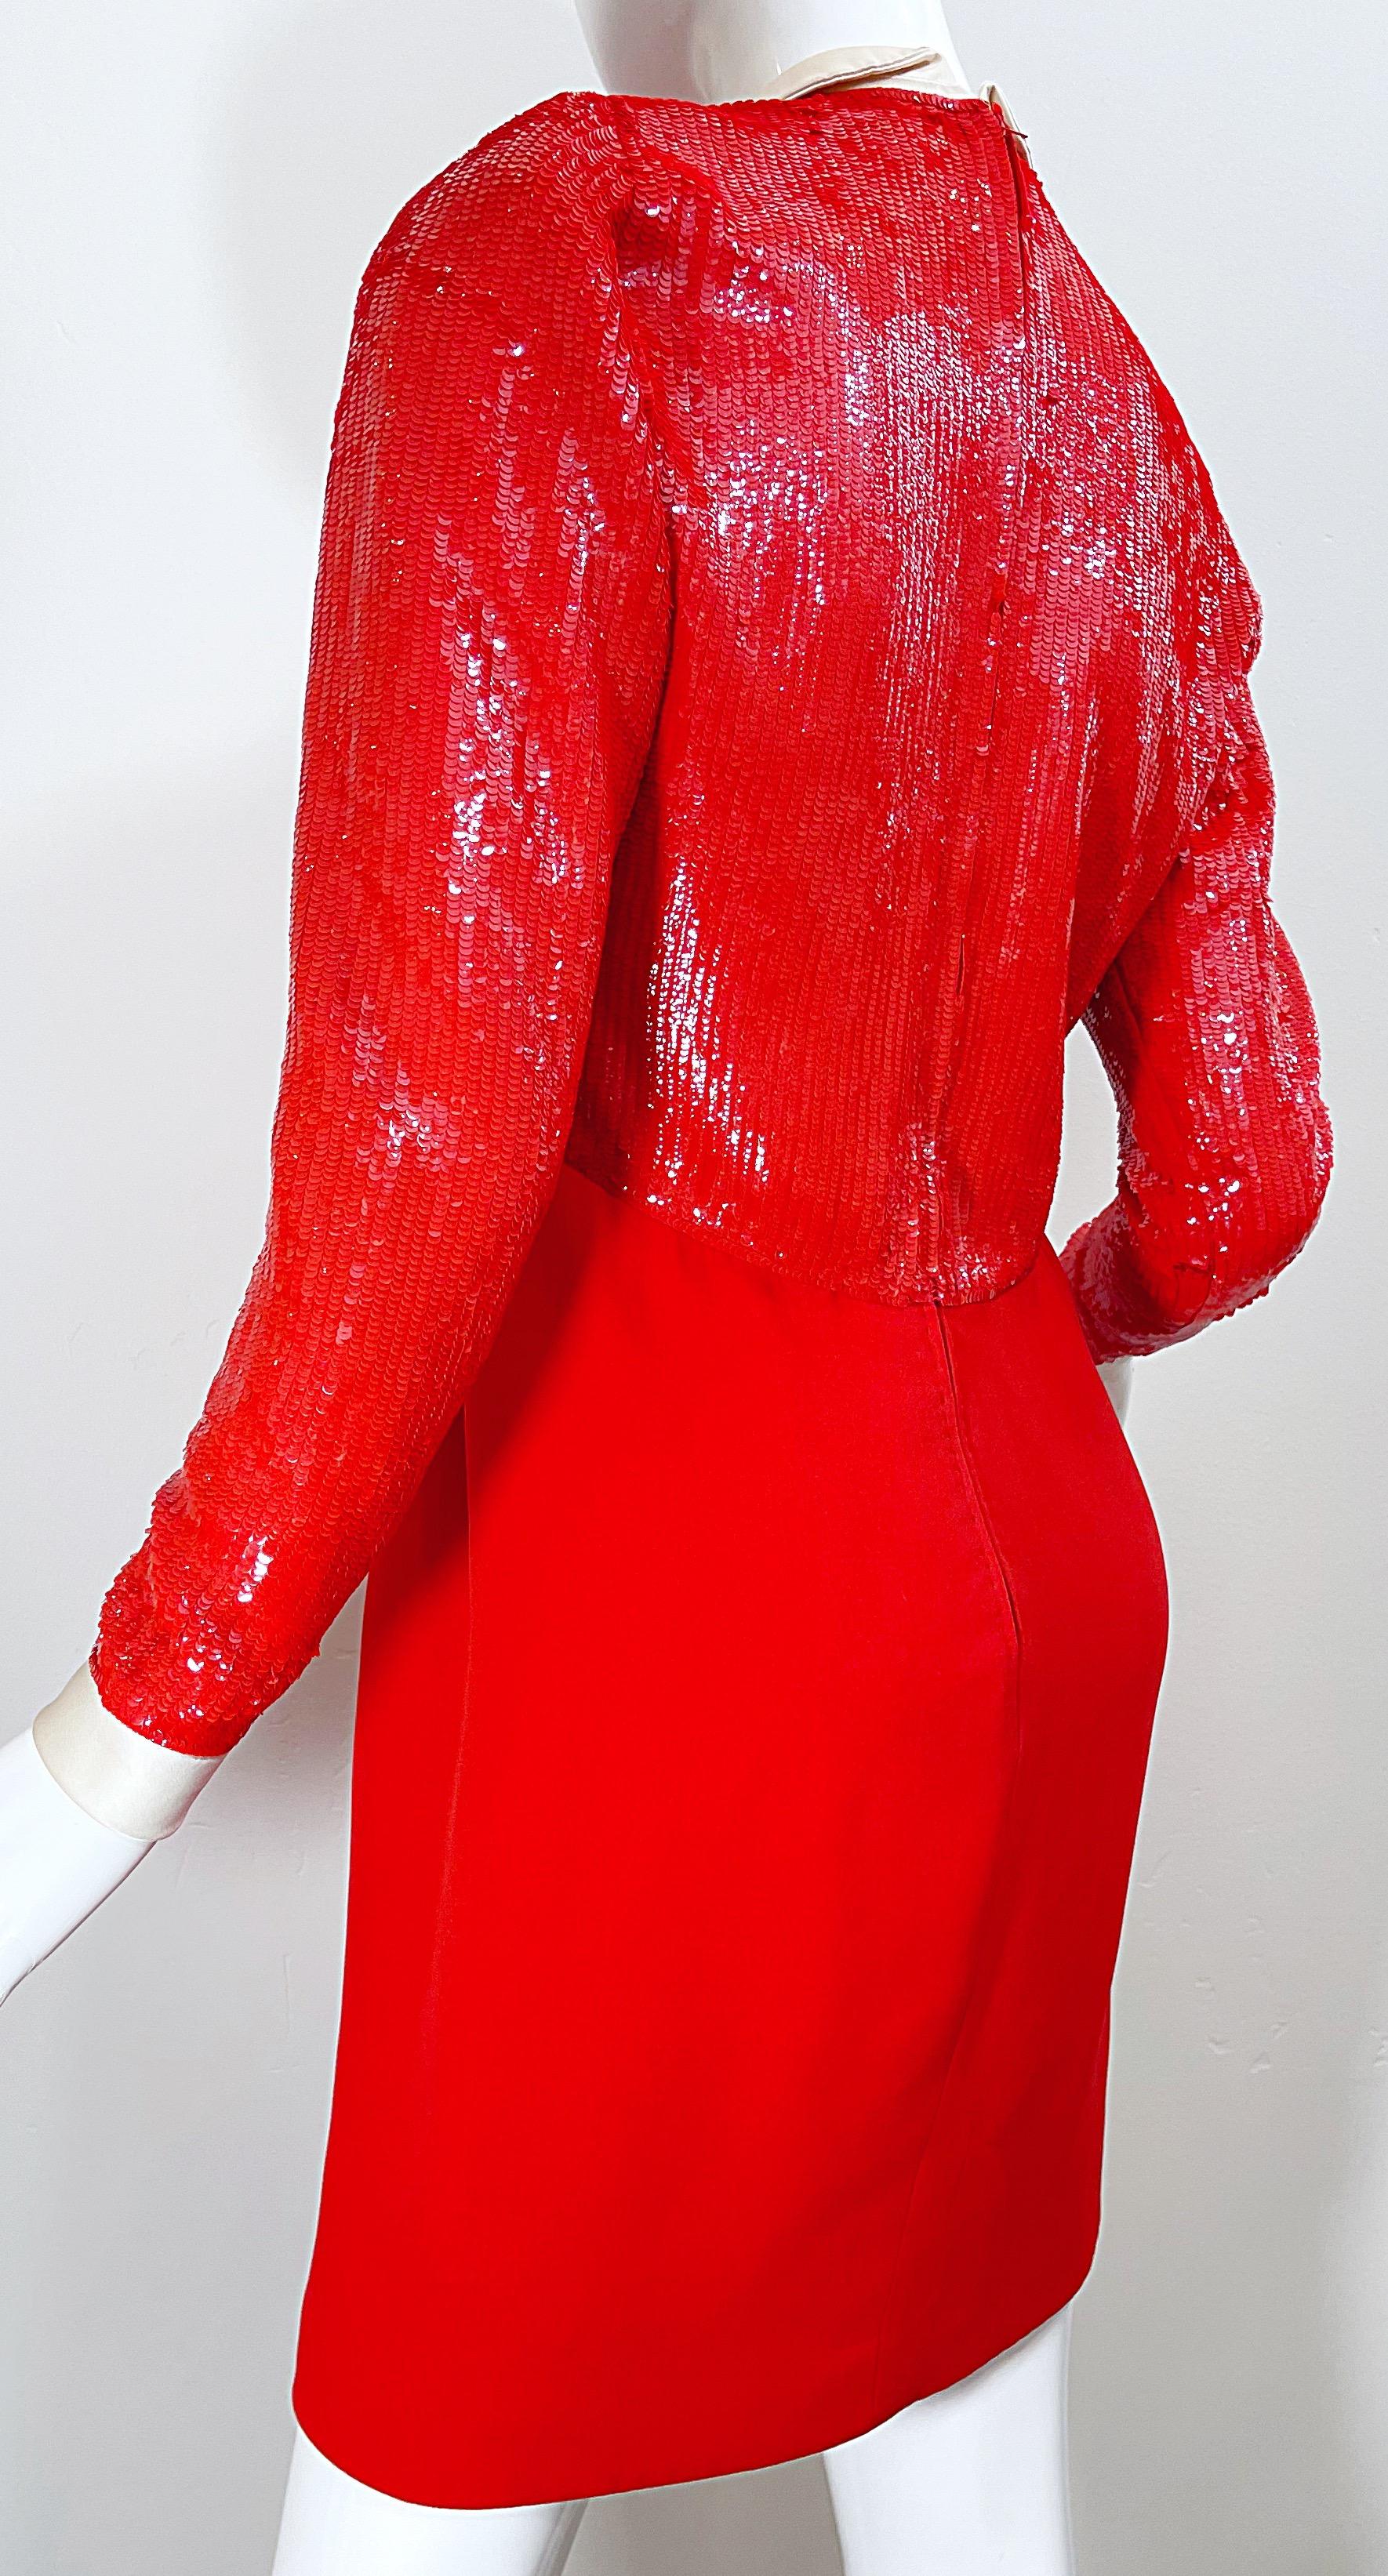 Geoffrey Beene 1980s Lipstick Red Faux Bolero Vintage 80s Tuxedo Dress  For Sale 4